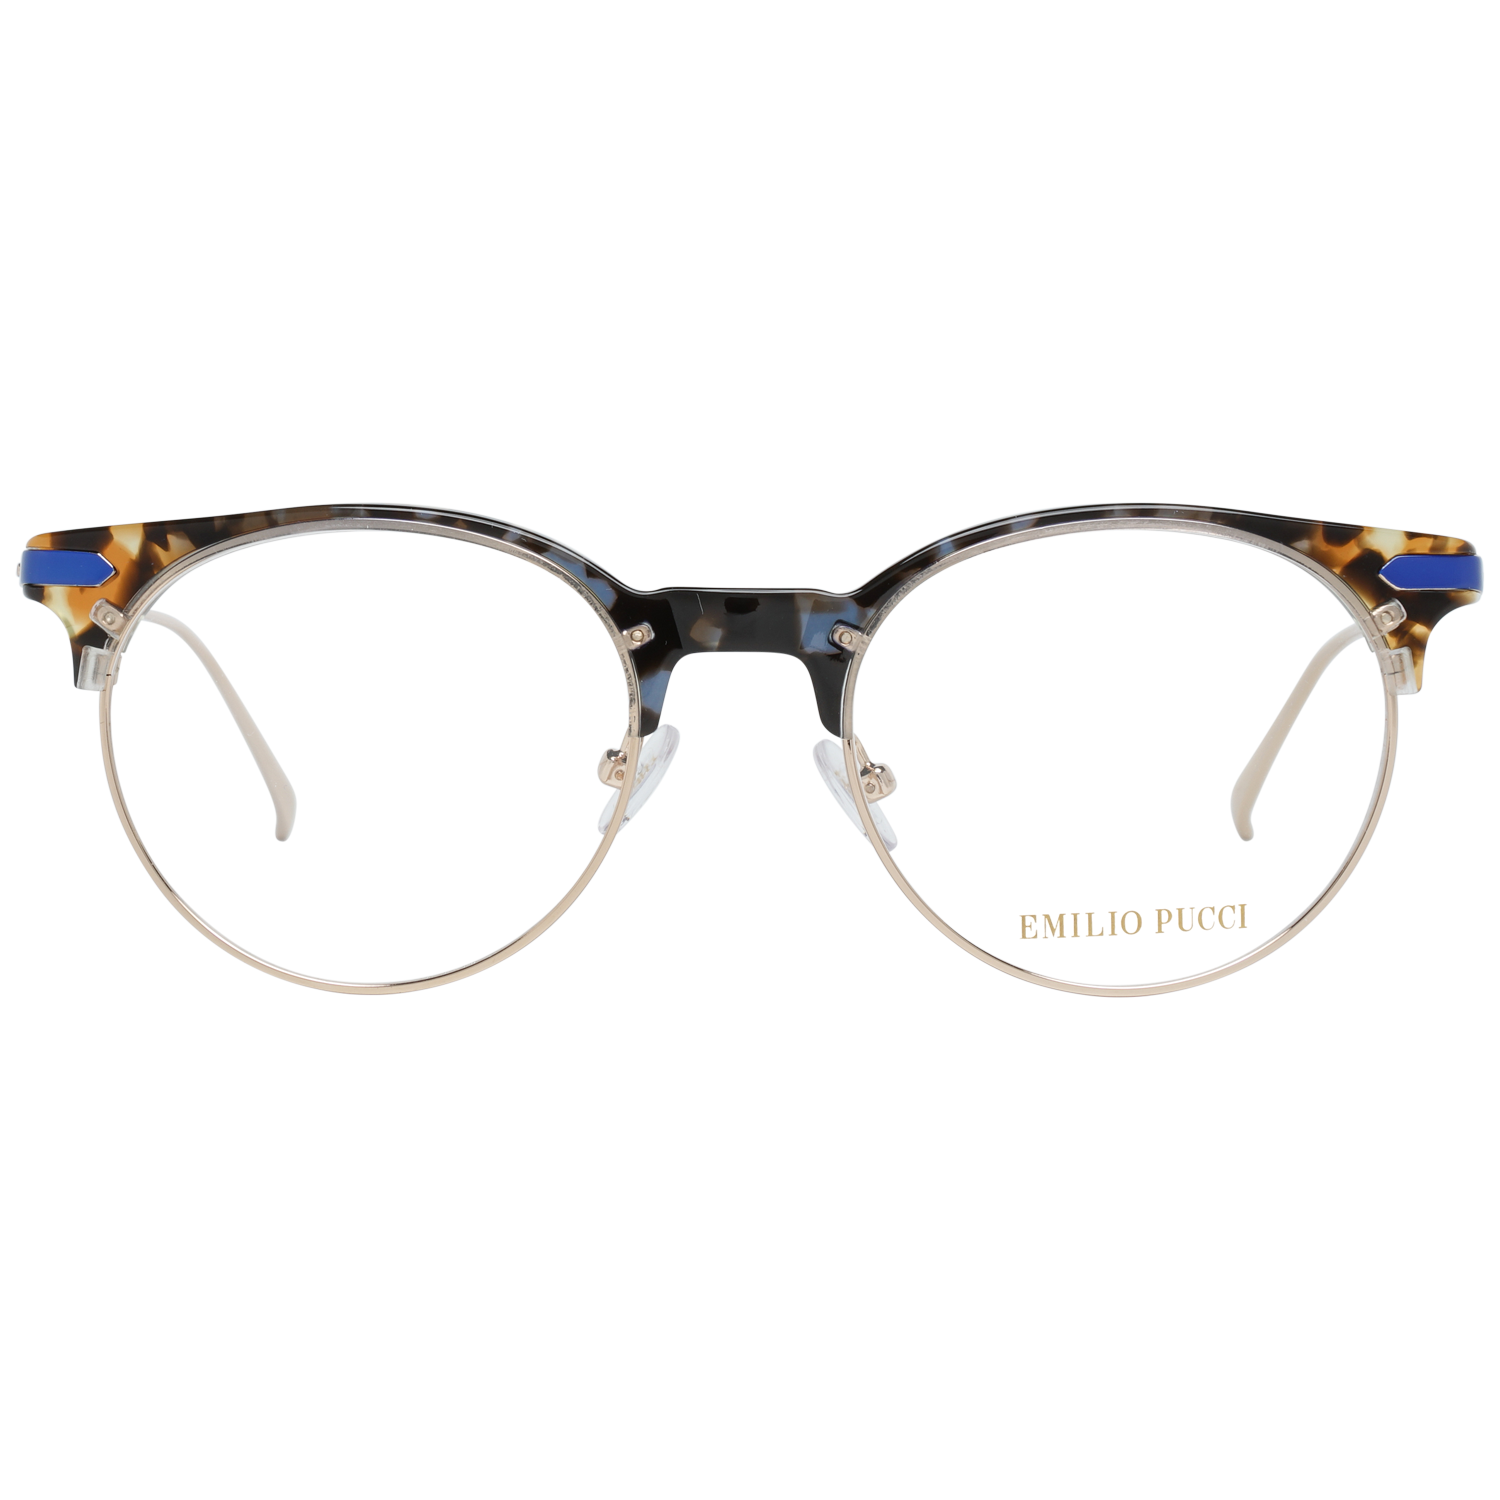 Emilio Pucci Frames Emilio Pucci Optical Frame EP5104 055 50 Eyeglasses Eyewear UK USA Australia 